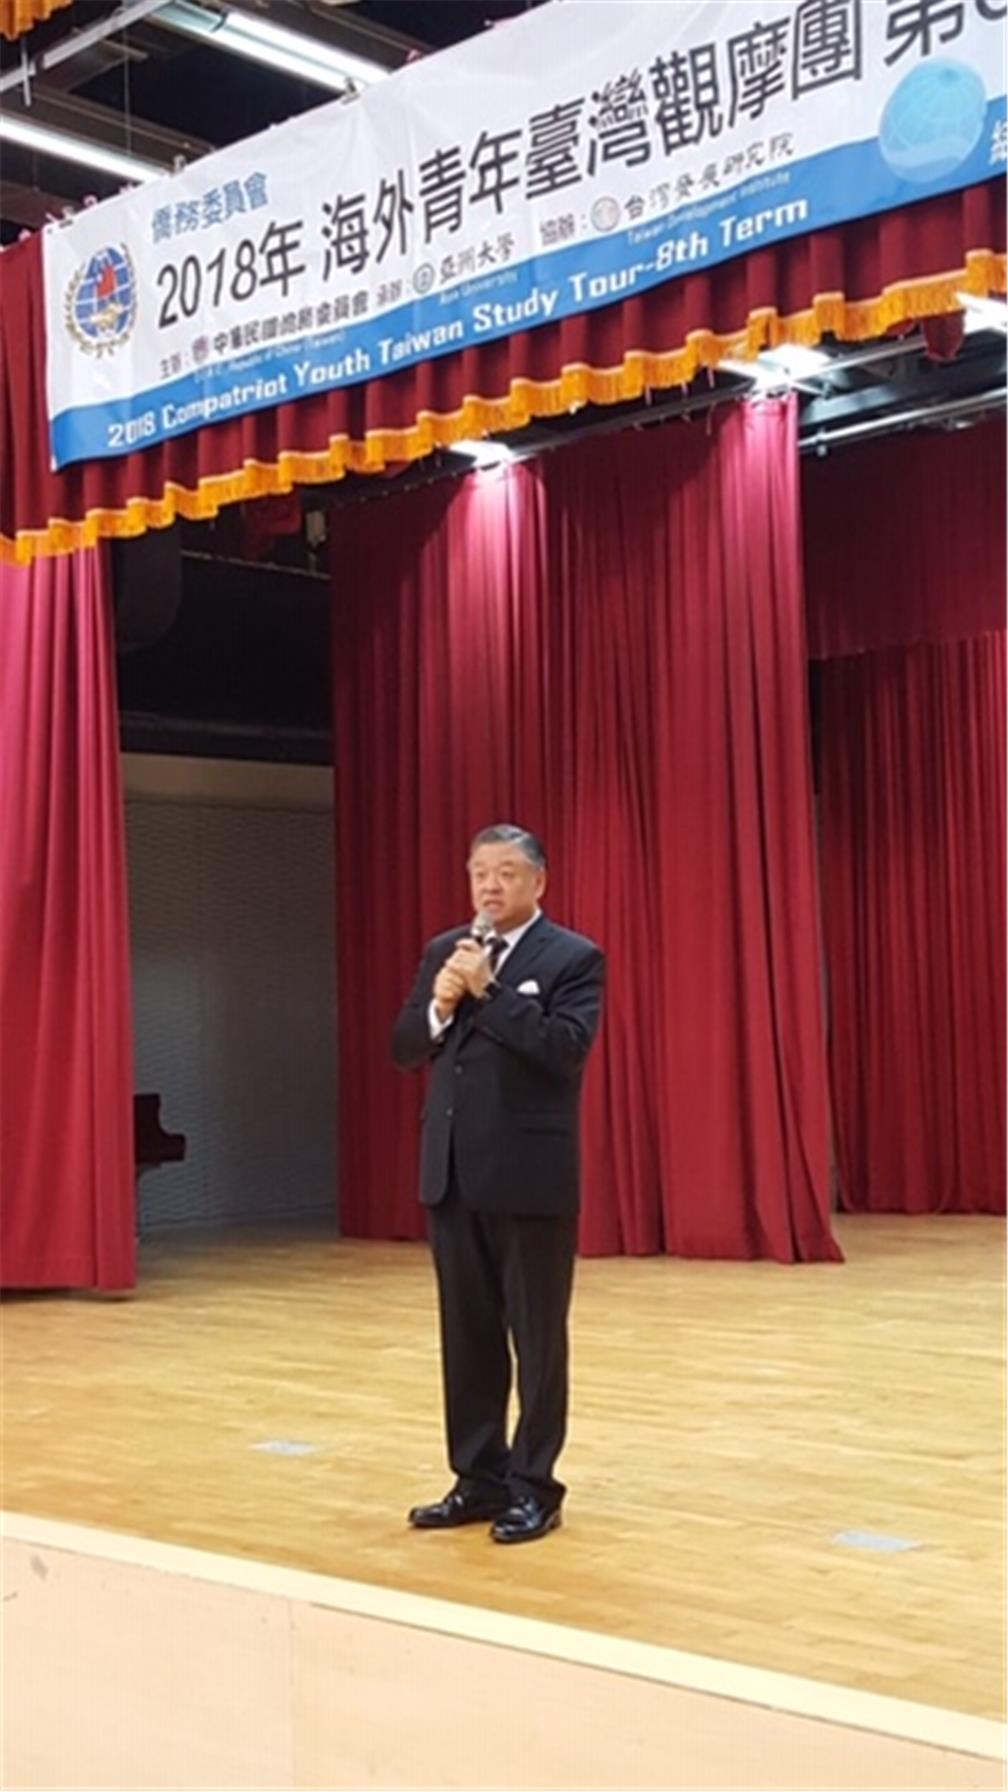 Deputy Minister Roy Yuan-Rong Leu gave a speech